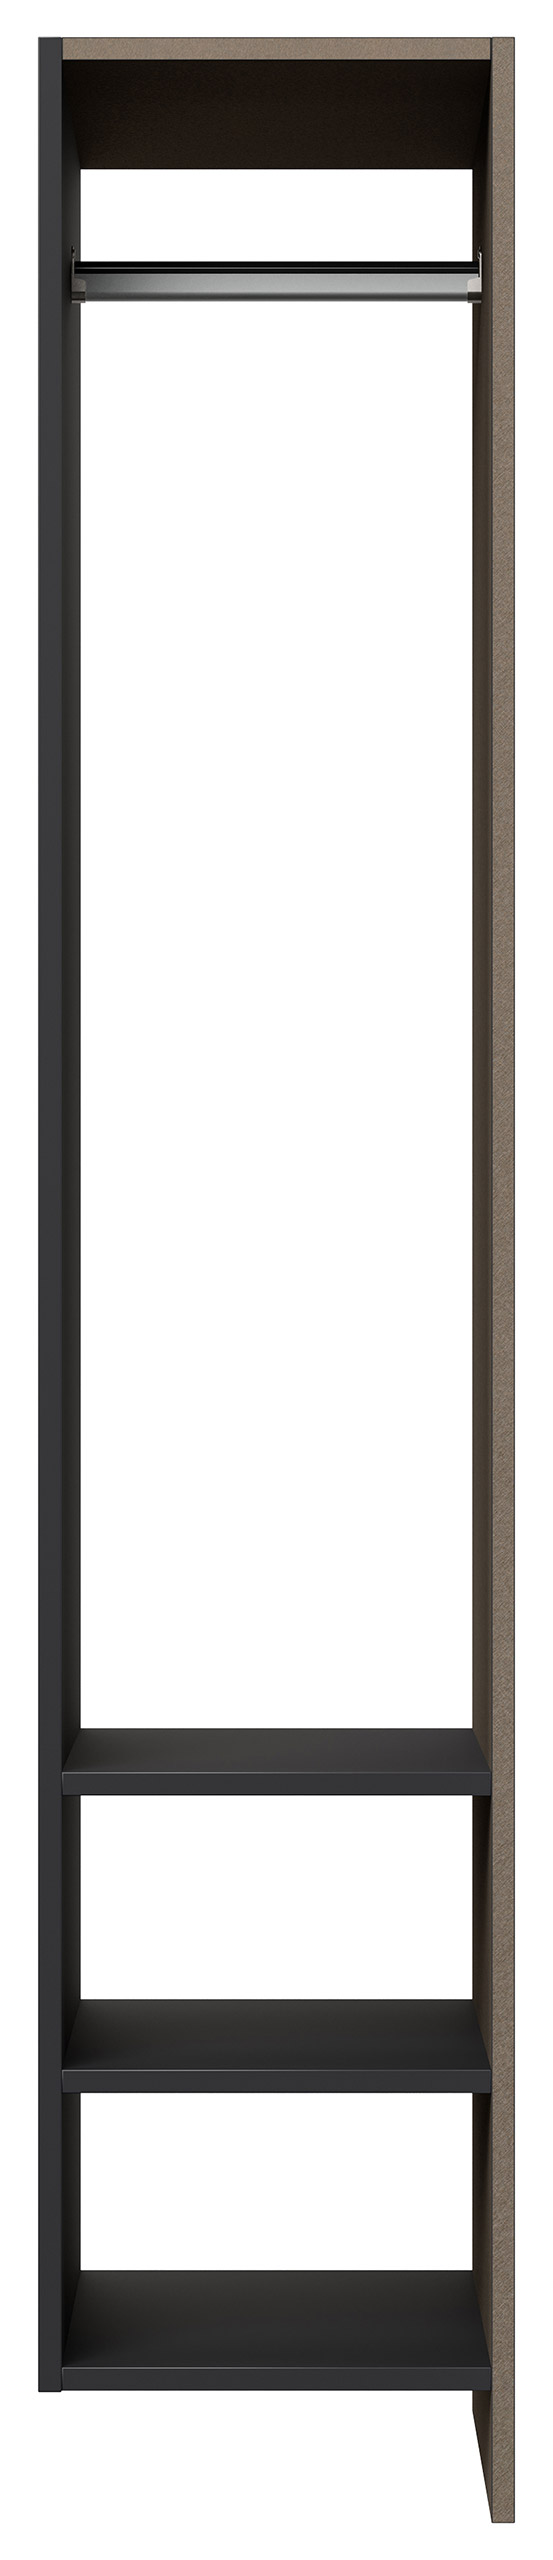 Garderobe Blu-S 3 tlg Konsole Push-to-open Spiegel Paneel 6 Paar Sand